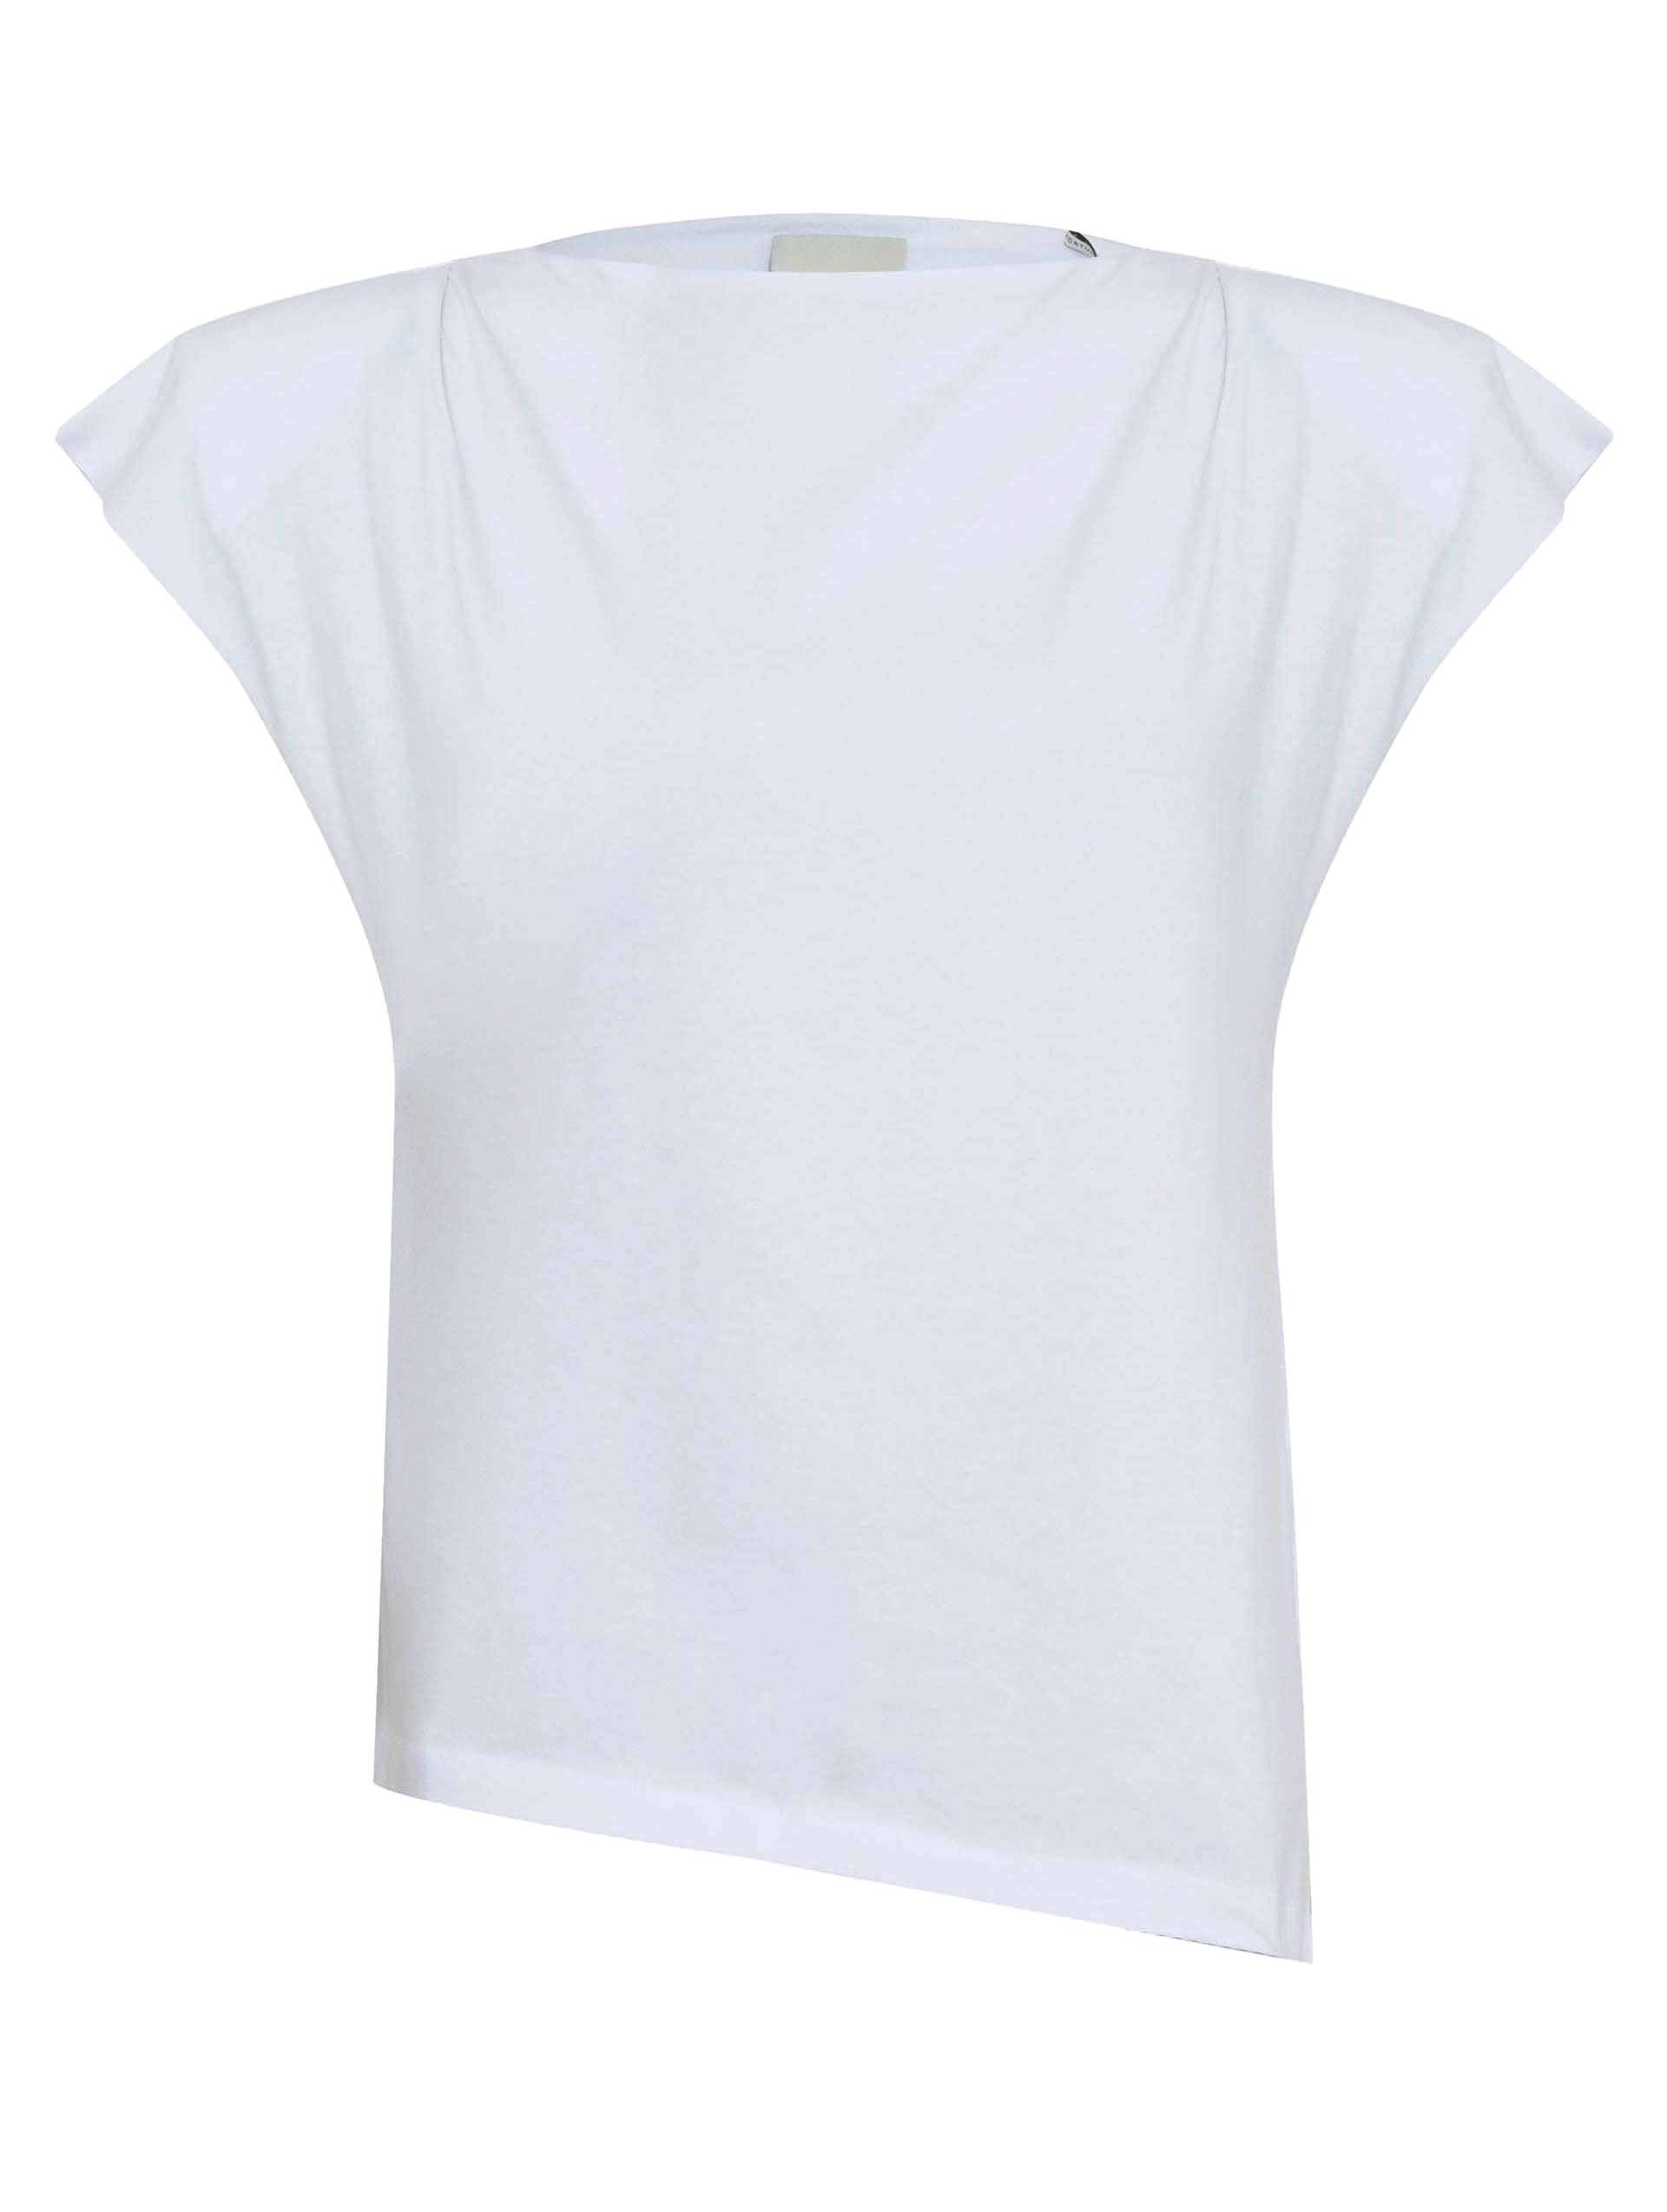 Camiseta Assimétrica Branca